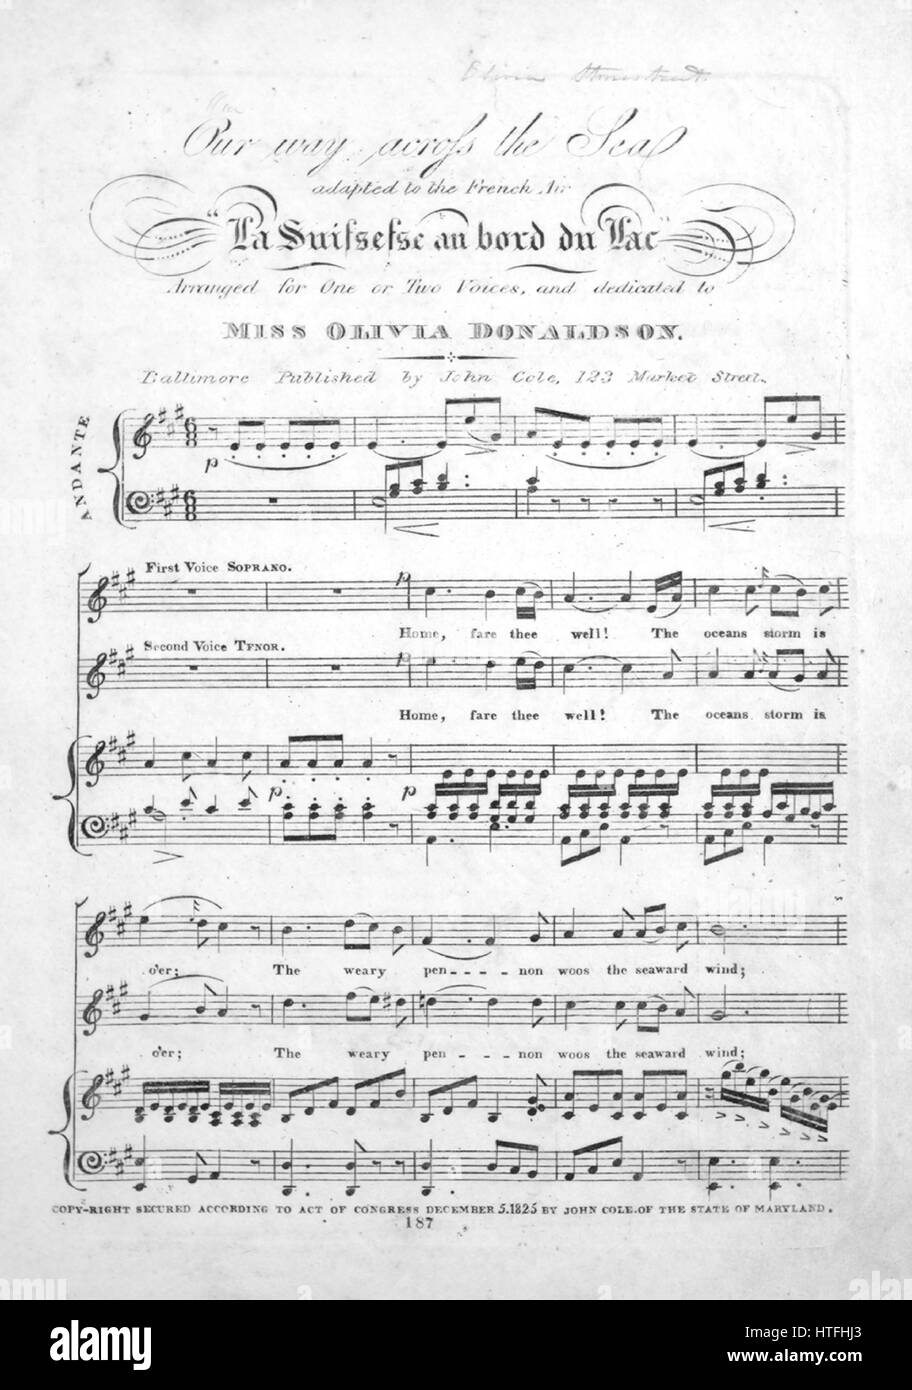 Imagen de cubierta de partituras de la canción 'nuestro camino cruzando el  mar", con notas de autoría original leyendo 'adaptados al aire francés 'La  Suissesse au bord du Lac", organizado por uno